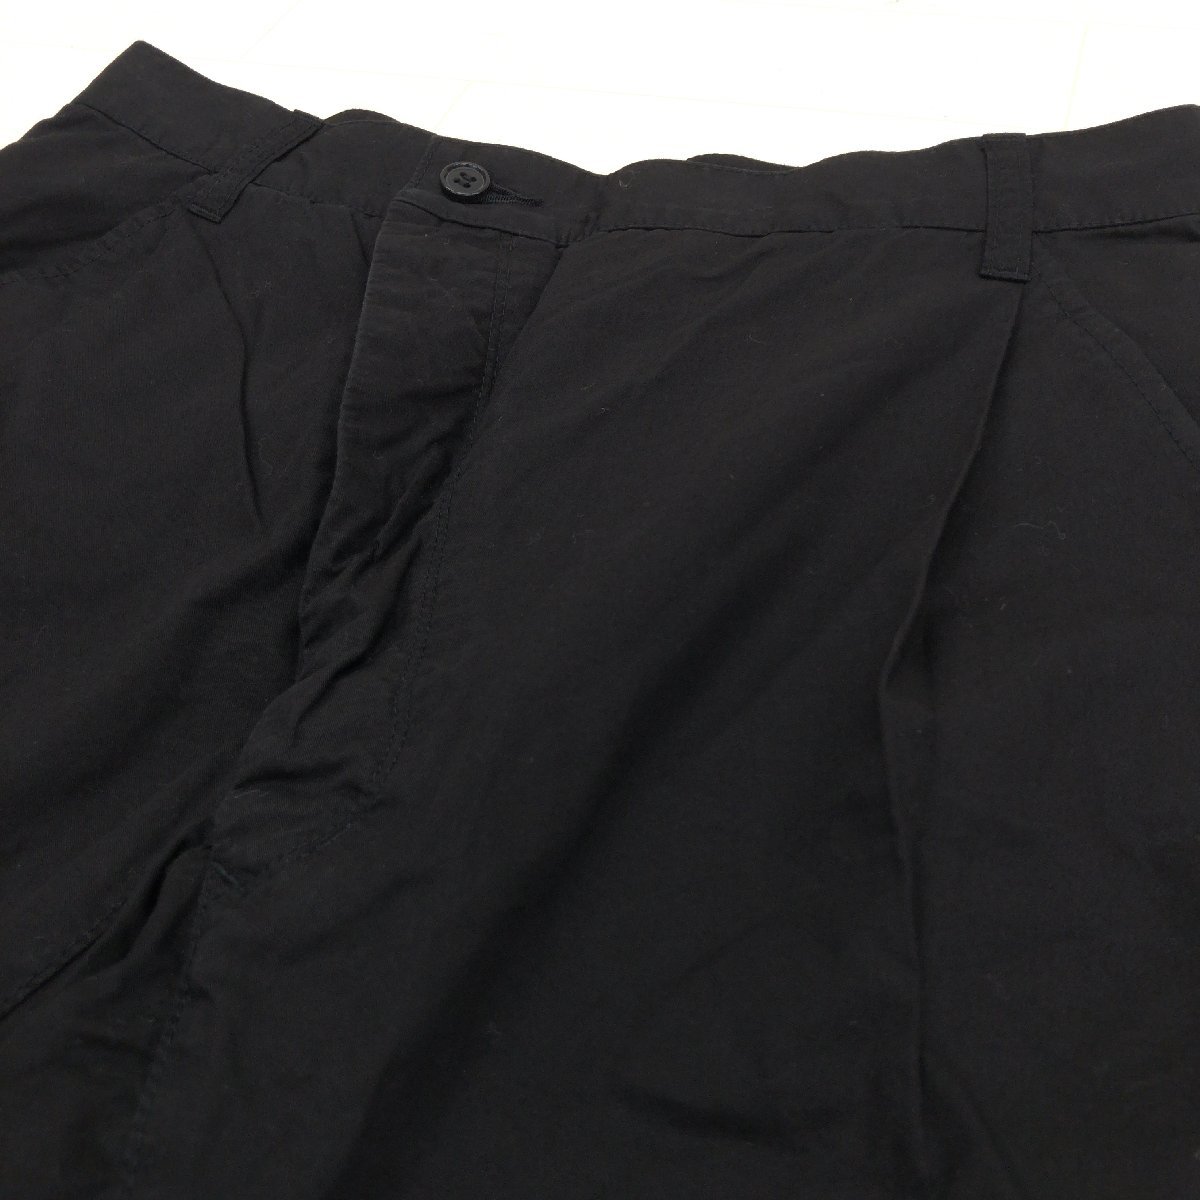 ZUCCa Zucca деформация высокий талия конические брюки S w72 чёрный черный сделано в Японии шт .. дизайн roll выше внутренний стандартный товар женский женский 